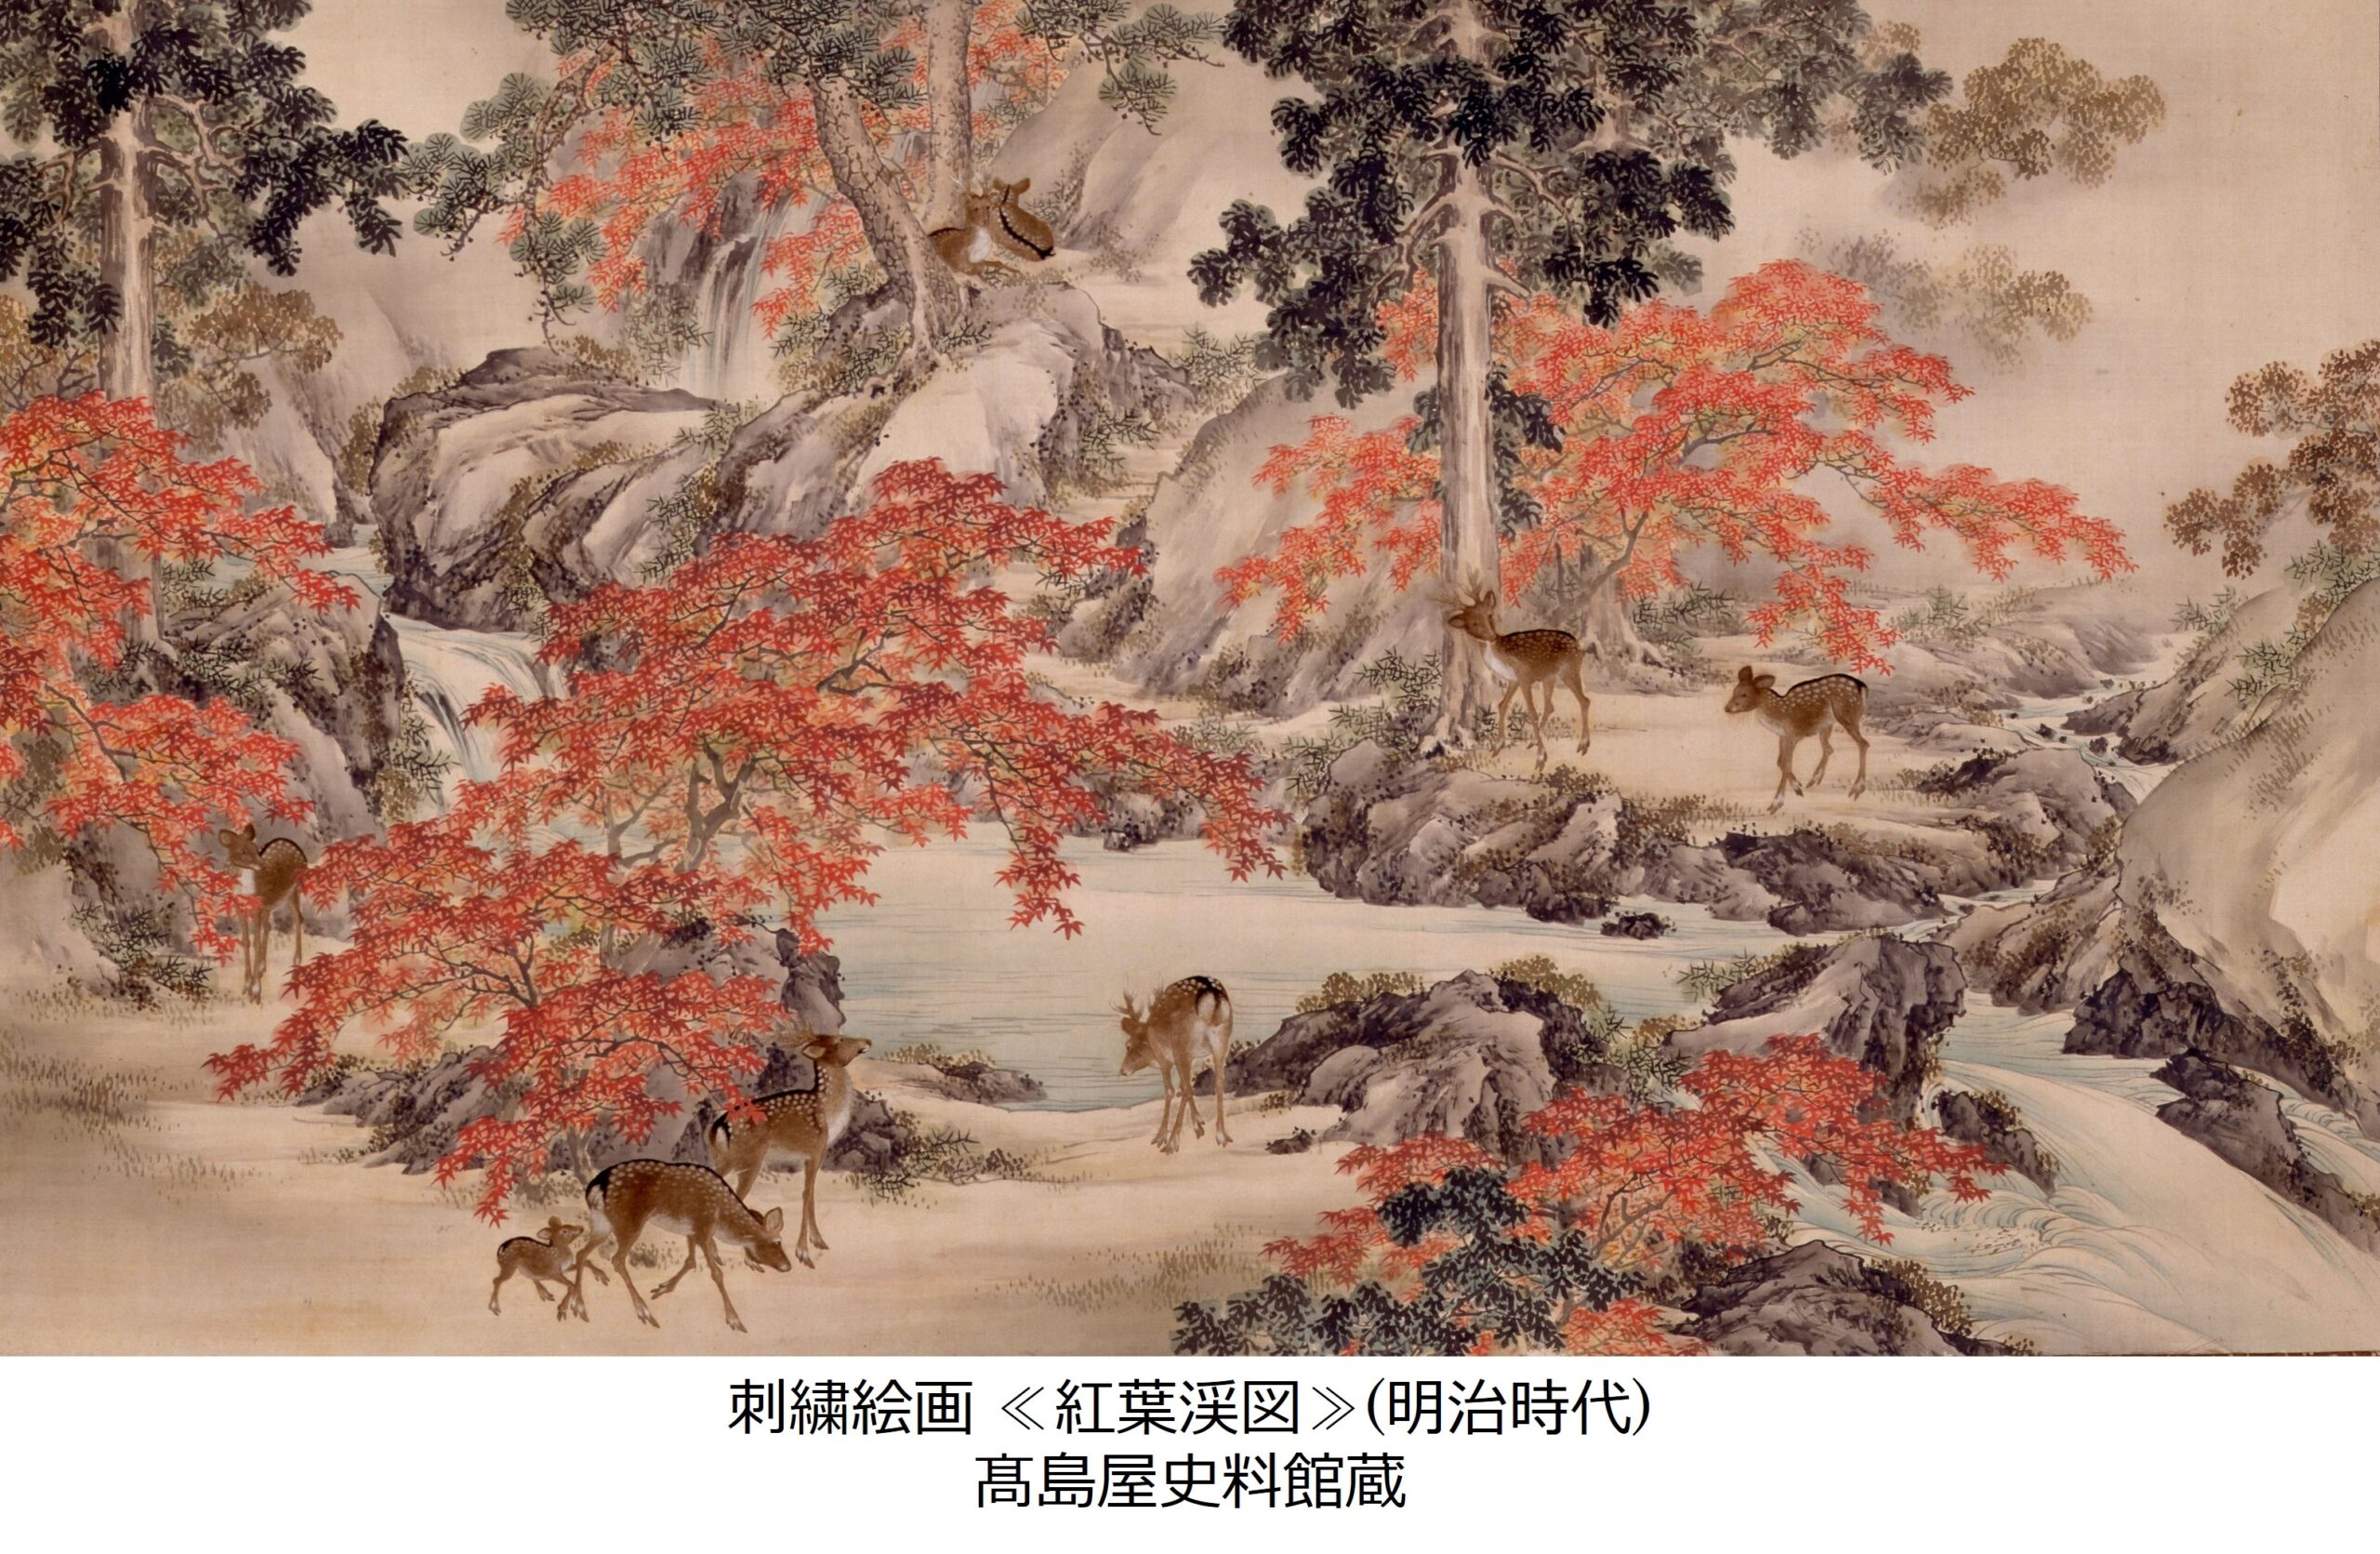 刺繍絵画の世界展 ‐明治・大正期の日本の美‐